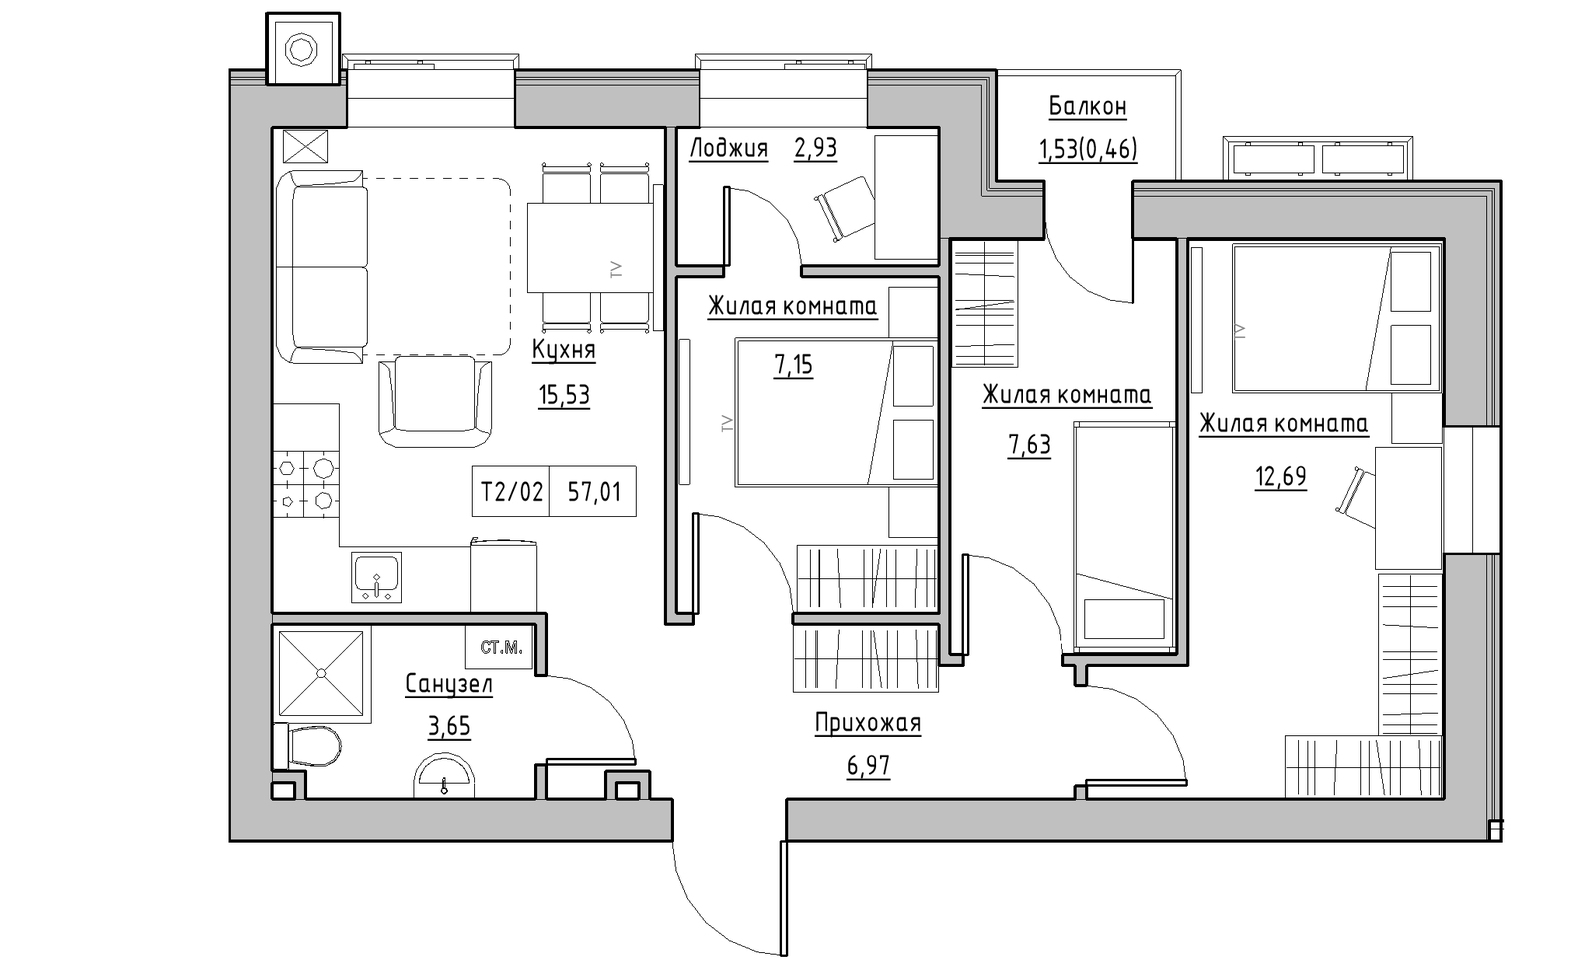 Планування 3-к квартира площею 57.01м2, KS-014-03/0008.